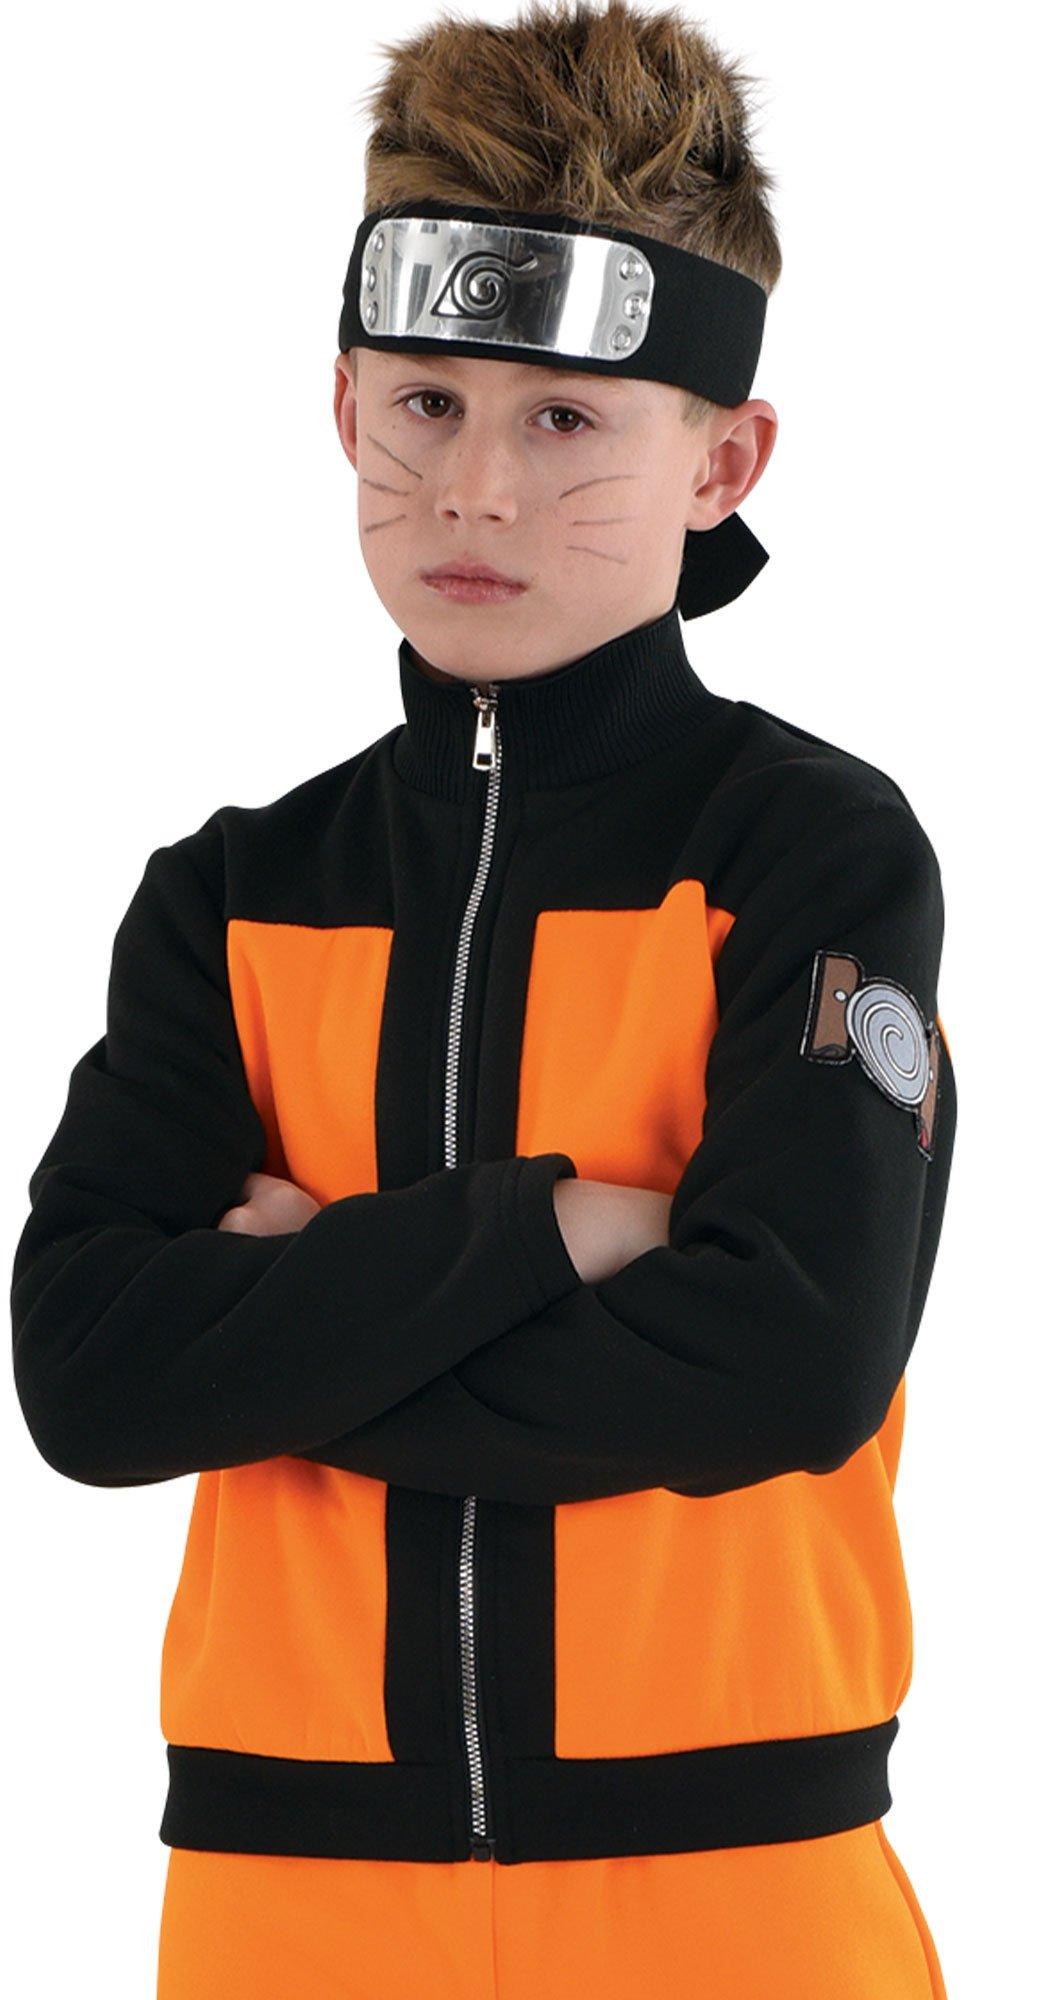 Kids' Naruto Costume - Naruto Shippuden